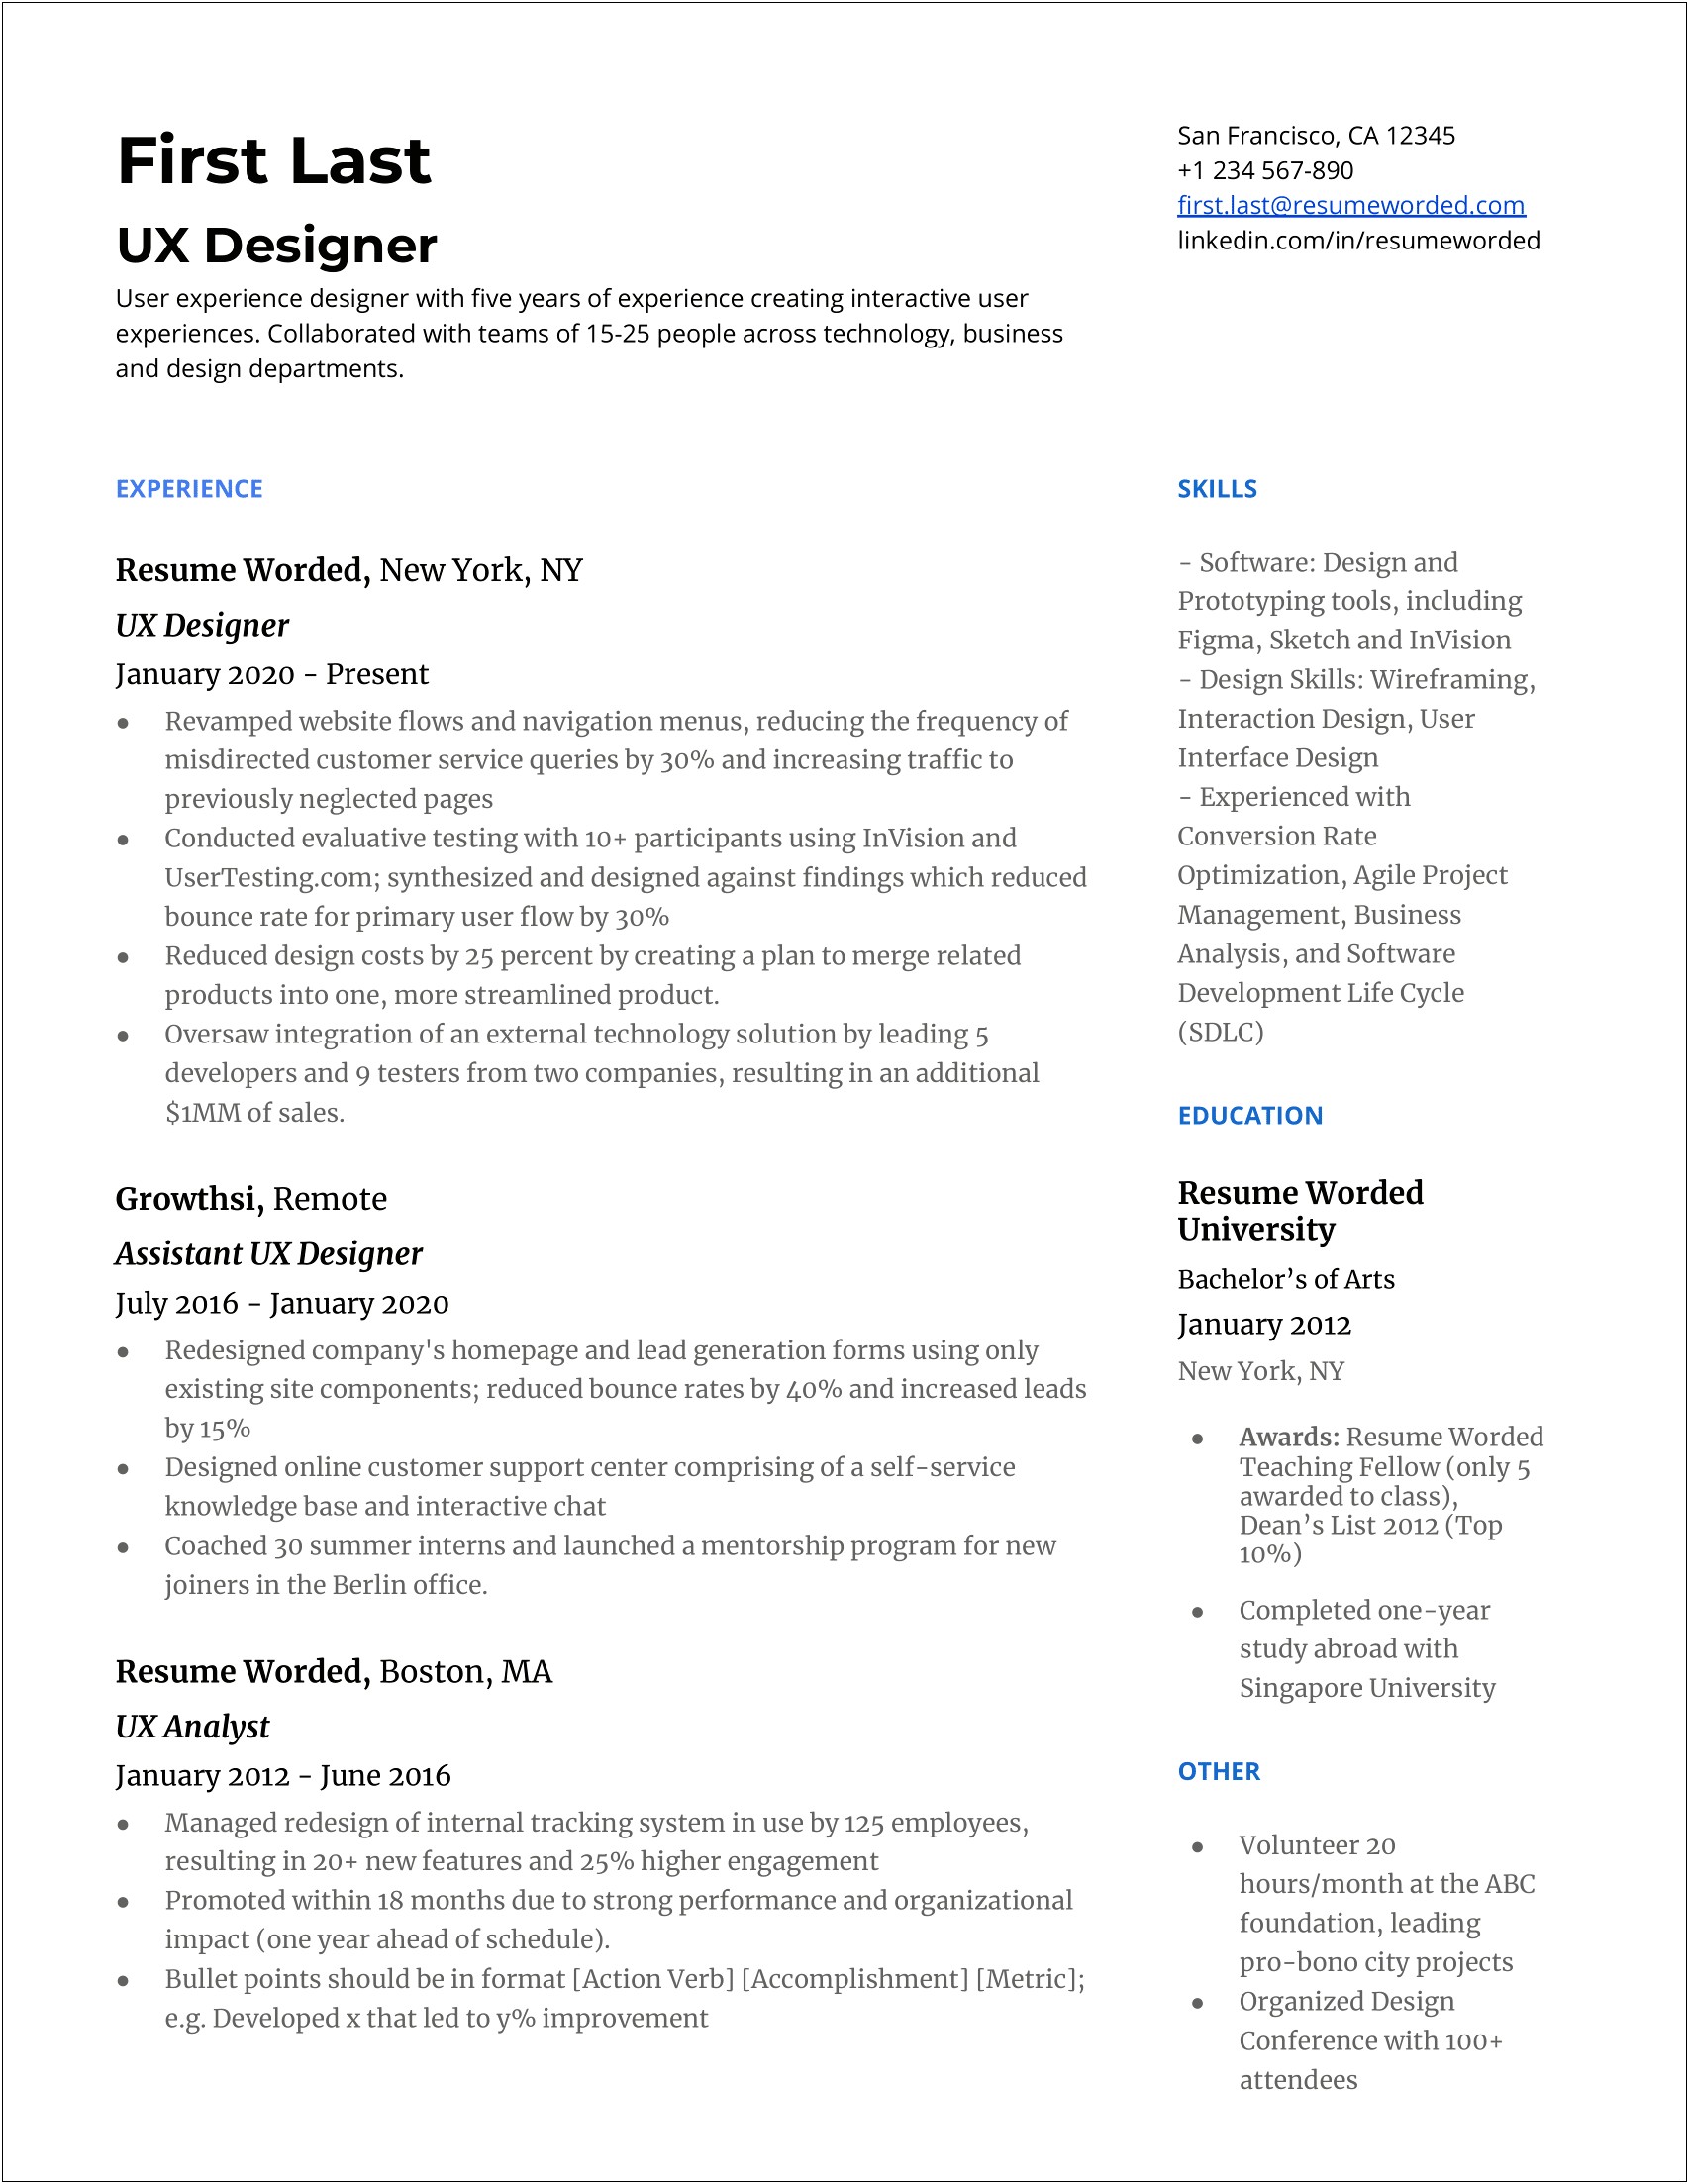 Resume Keywords For Ux Design Management